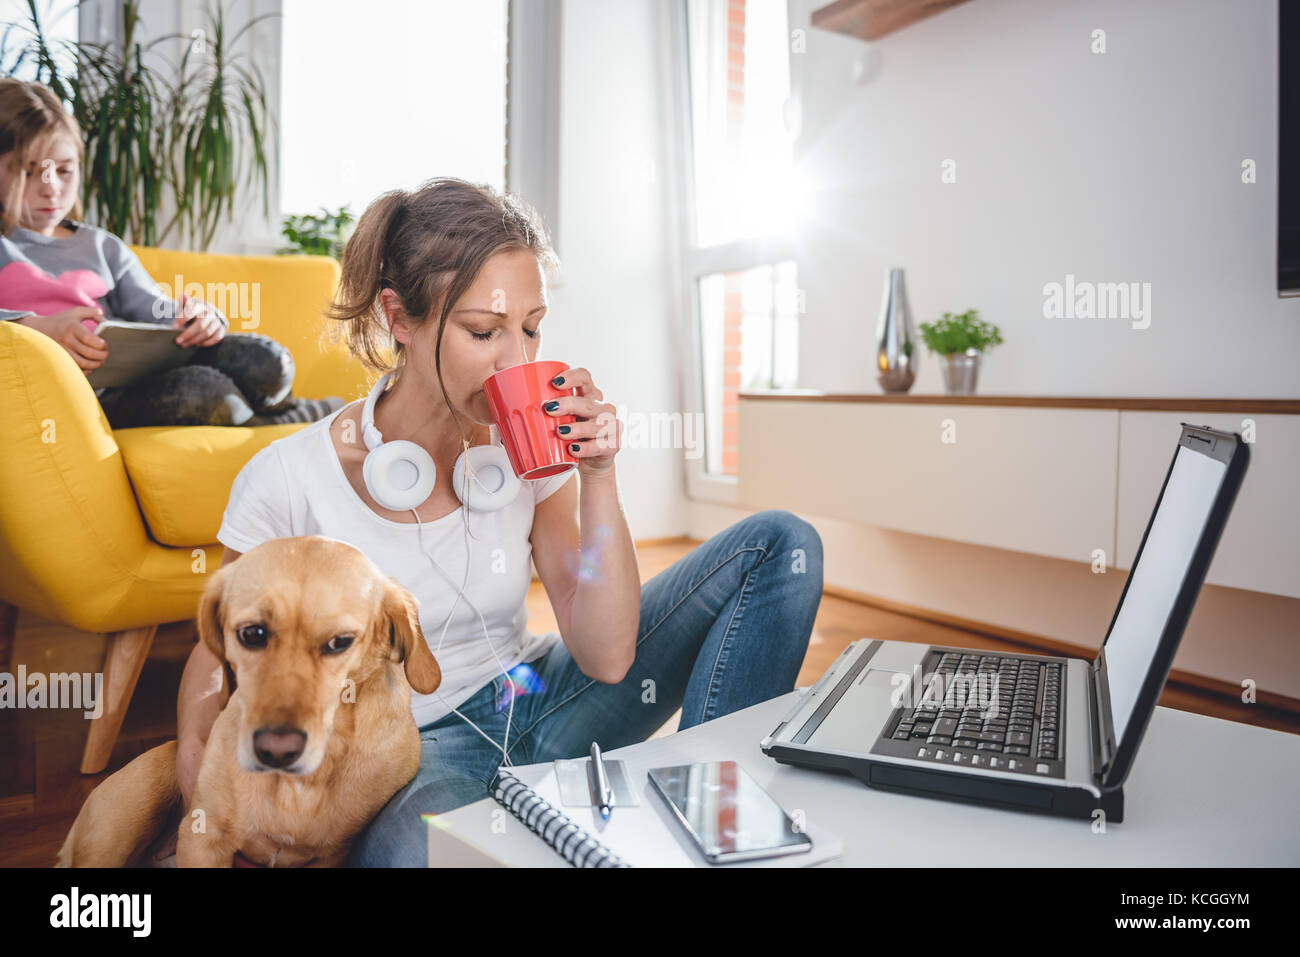 Frau mit weißem T-Shirt sitzen auf dem Boden in der Tabelle Kaffee trinken und einen Streichelzoo, einen Hund Stockfoto